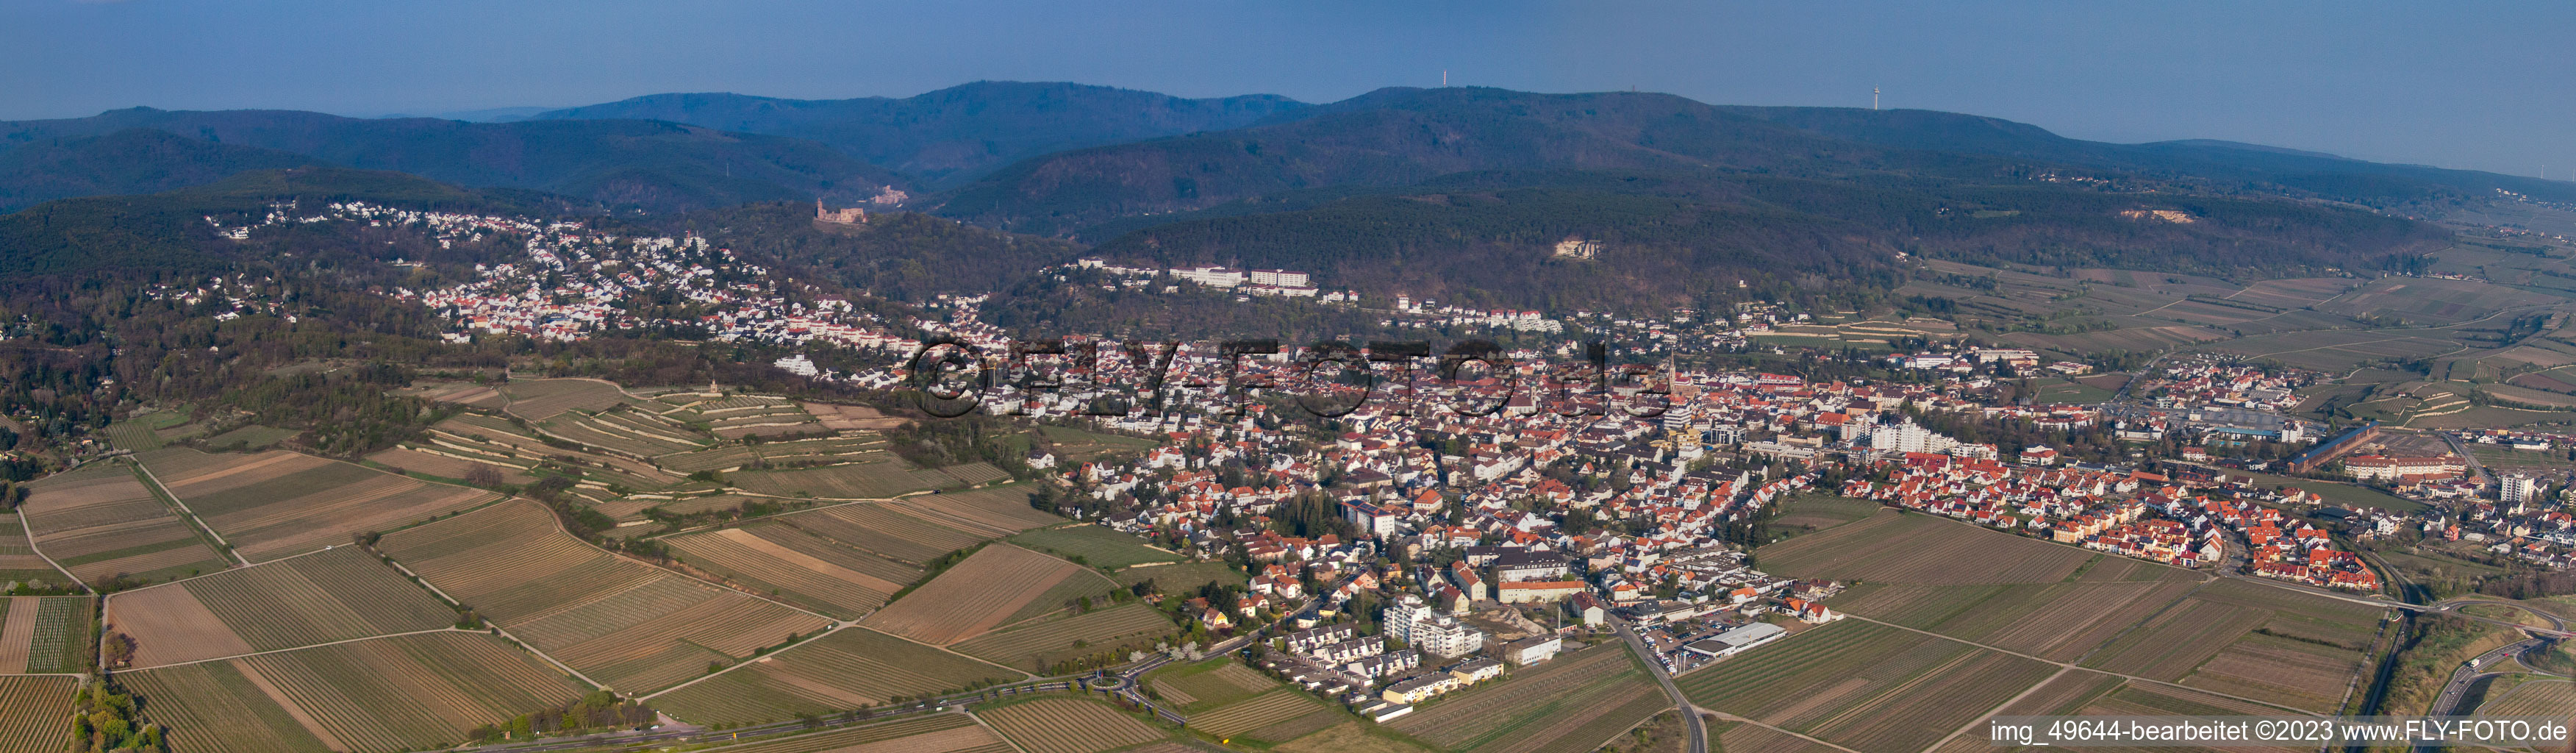 Panorama im Ortsteil Seebach in Bad Dürkheim im Bundesland Rheinland-Pfalz, Deutschland